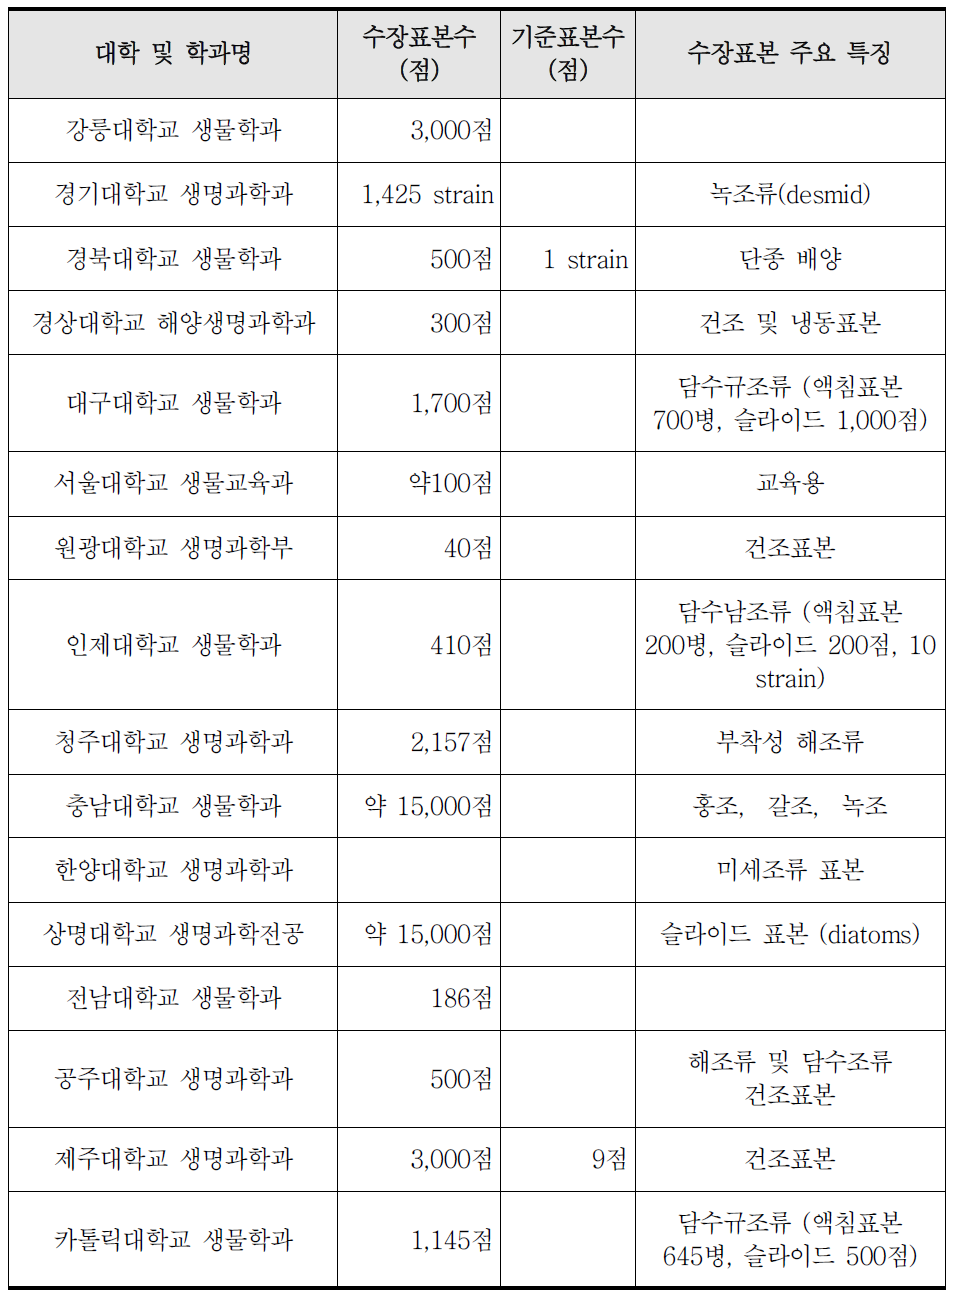 조류표본 기증 가능 대학 목록(문화관광부, 2013)